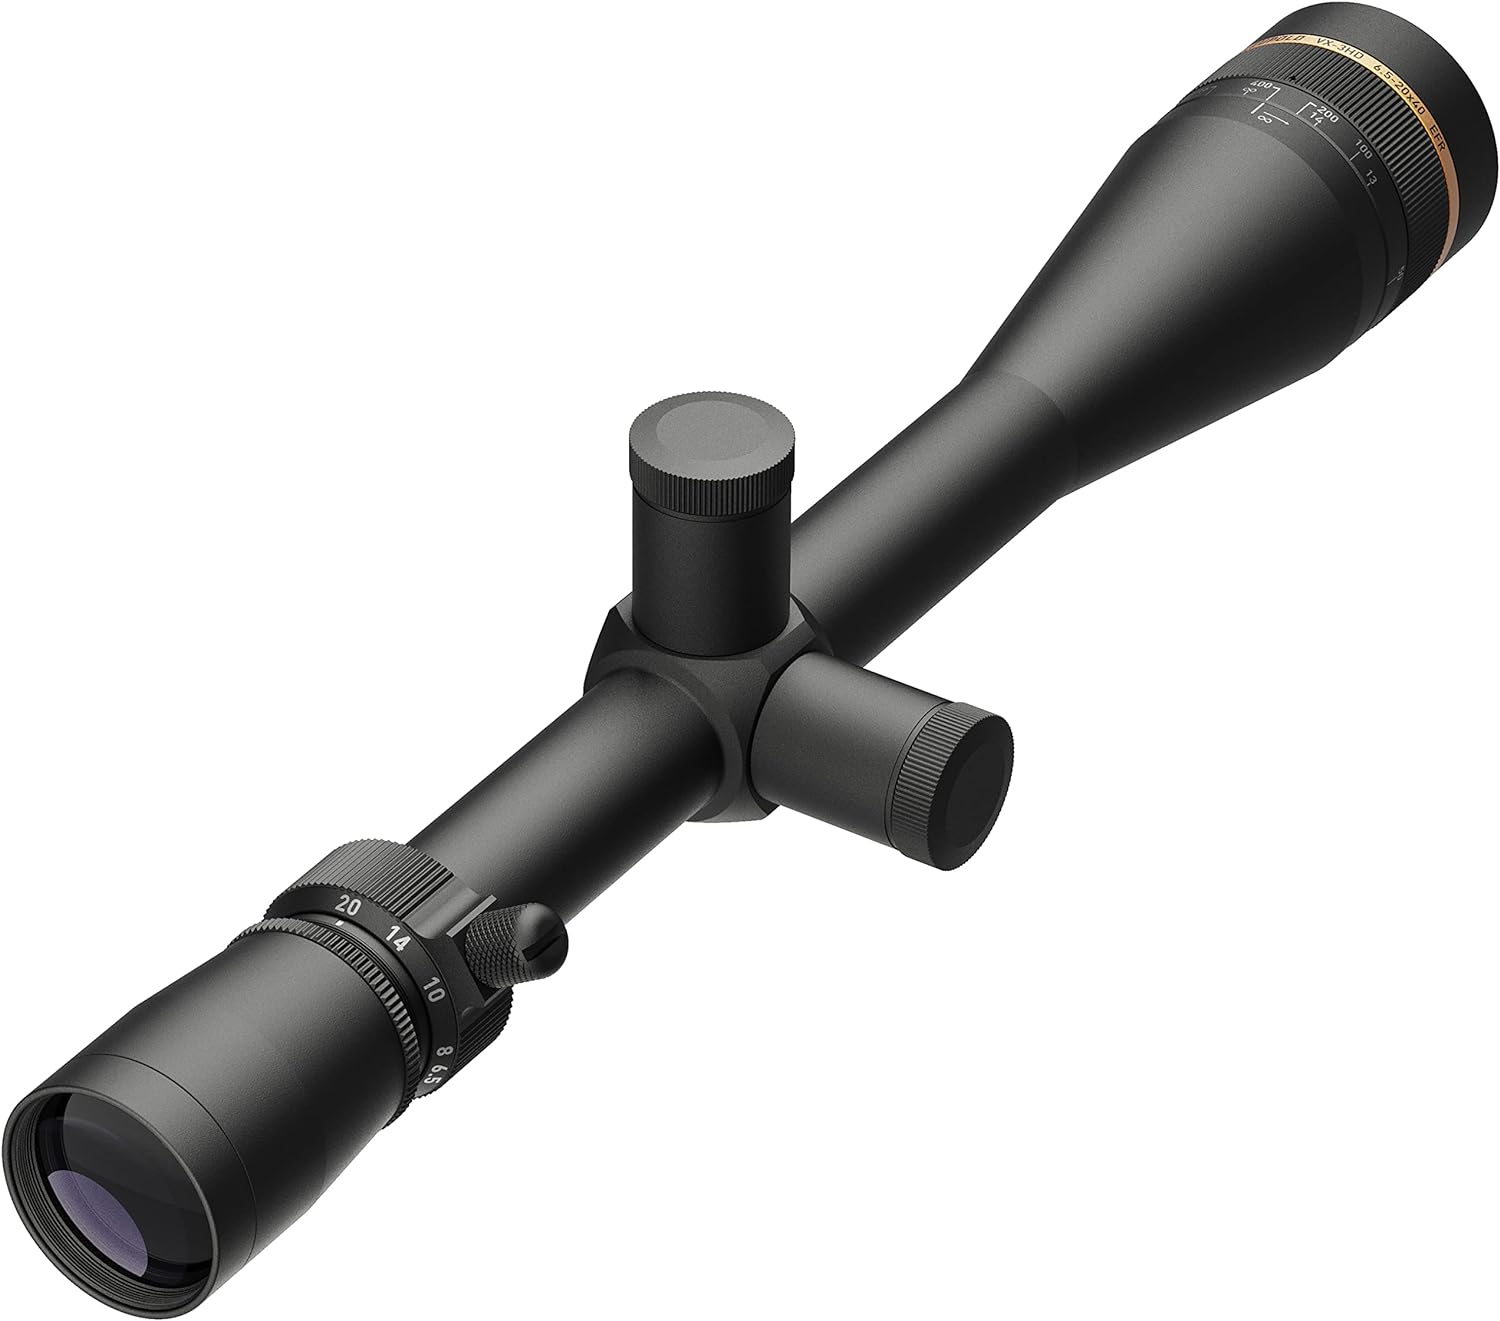 Leupold VX-3HD 6.5-20x40mm Riflescope, EFR CDS-T, Fine Duplex Reticle - Leupold VX-3HD 6.5-20x40mm Riflescope Review